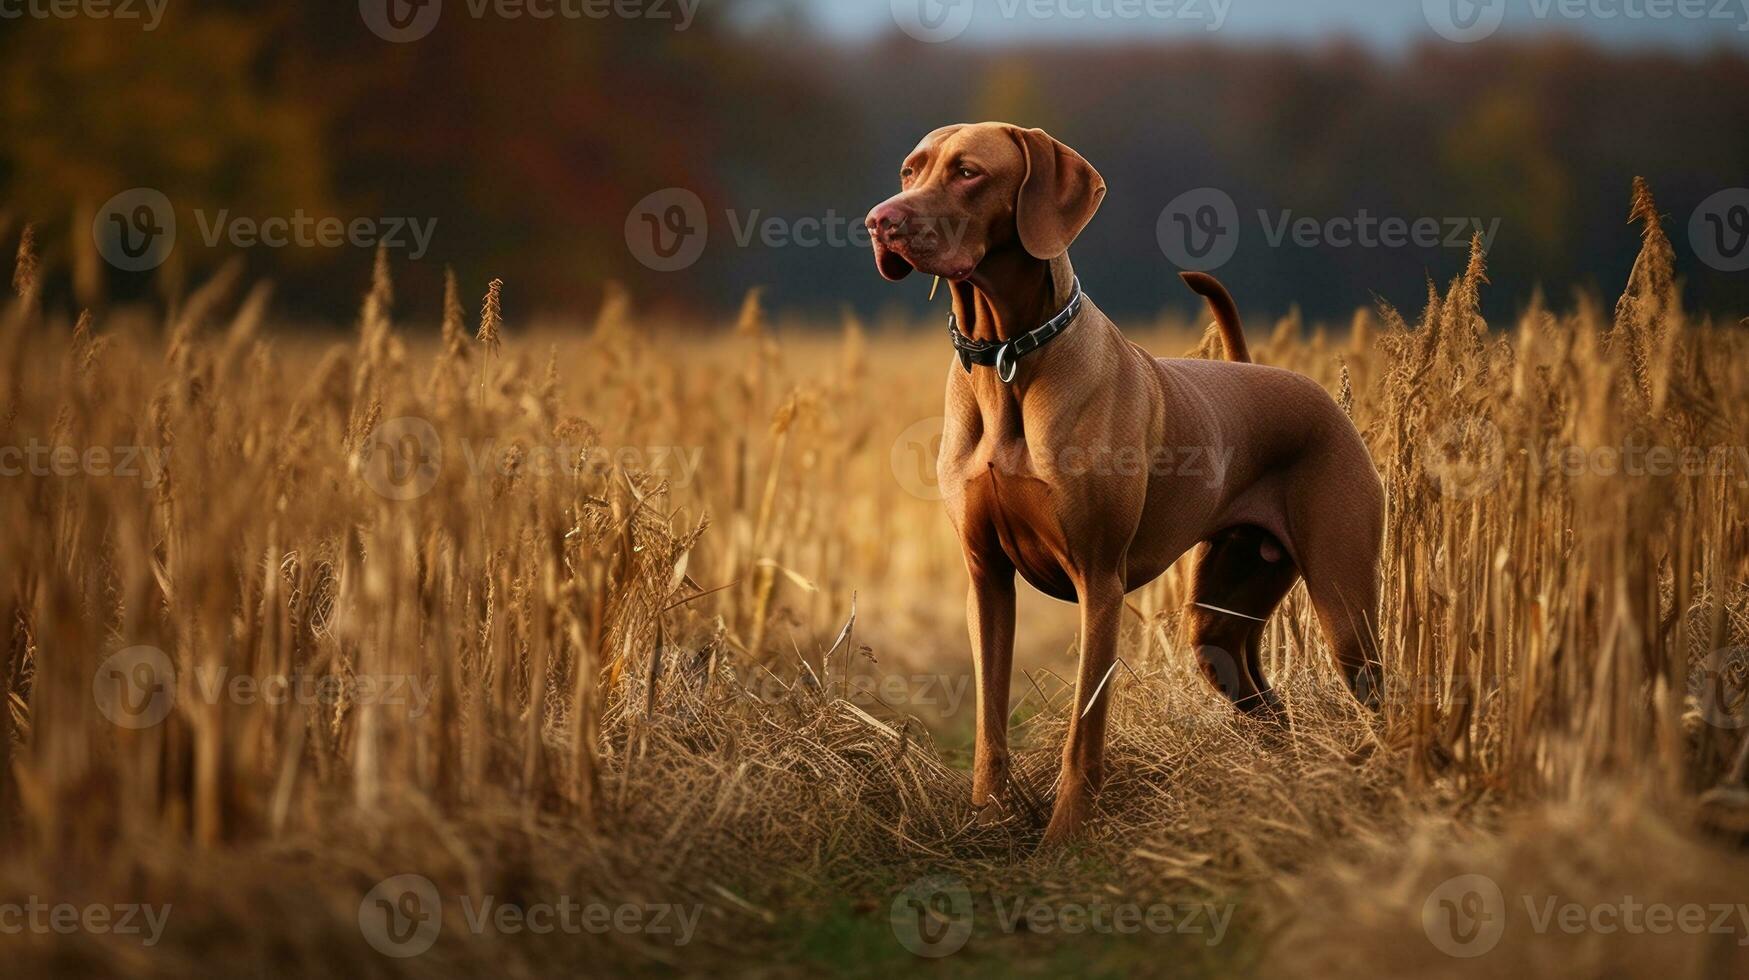 ungherese cane da caccia pointer vizsla cane nel il campo durante autunno volta, suo oro ruggine cappotto mescolanza senza soluzione di continuità con il autunno le foglie in giro esso foto